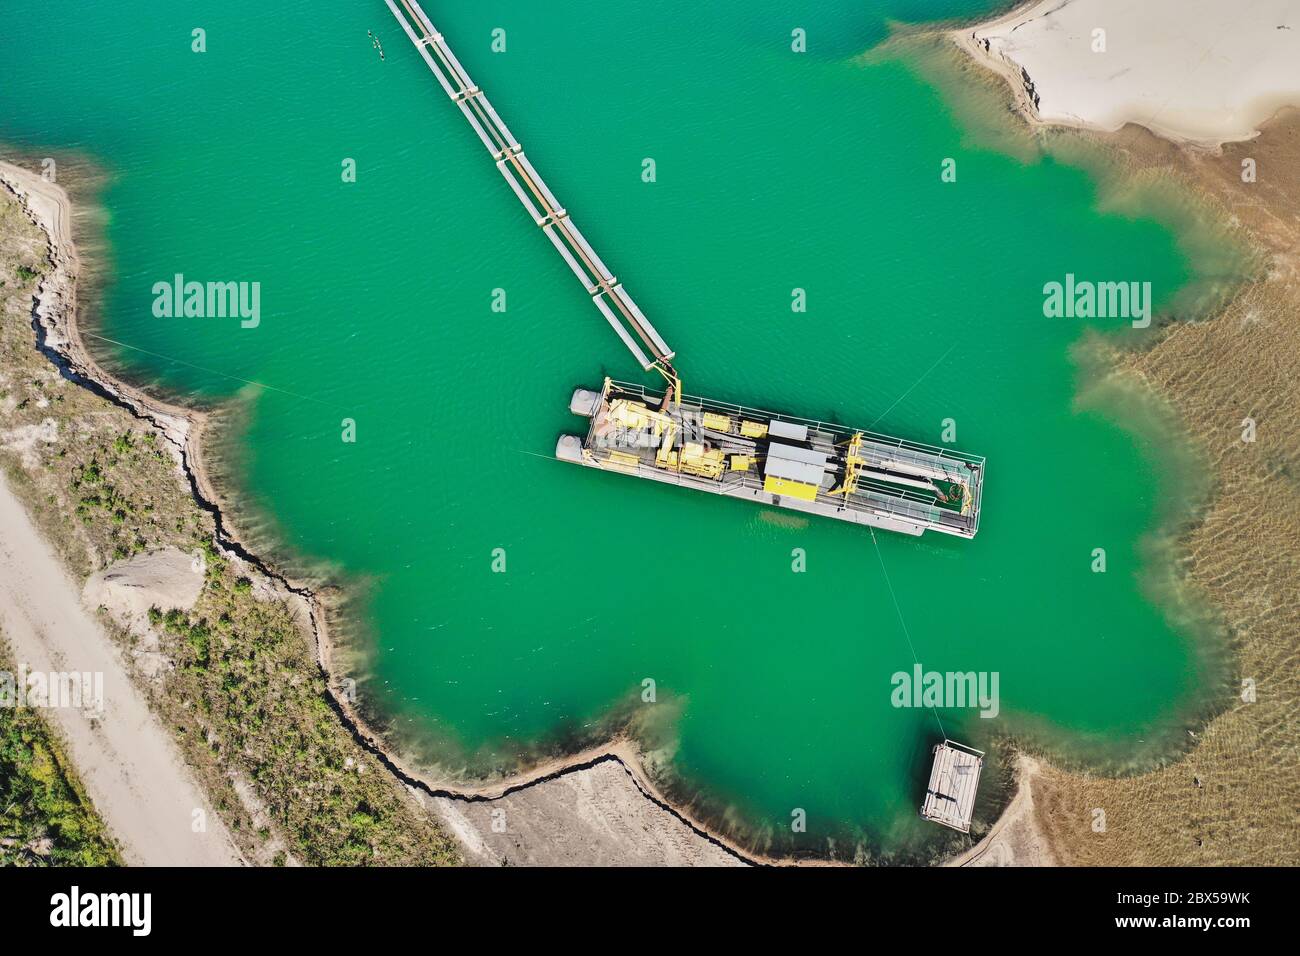 Fotografia aerea verticale di una draga aspirante in un'area mineraria umida per sabbia e ghiaia, con tubazioni collegate per rimuovere la sabbia Foto Stock